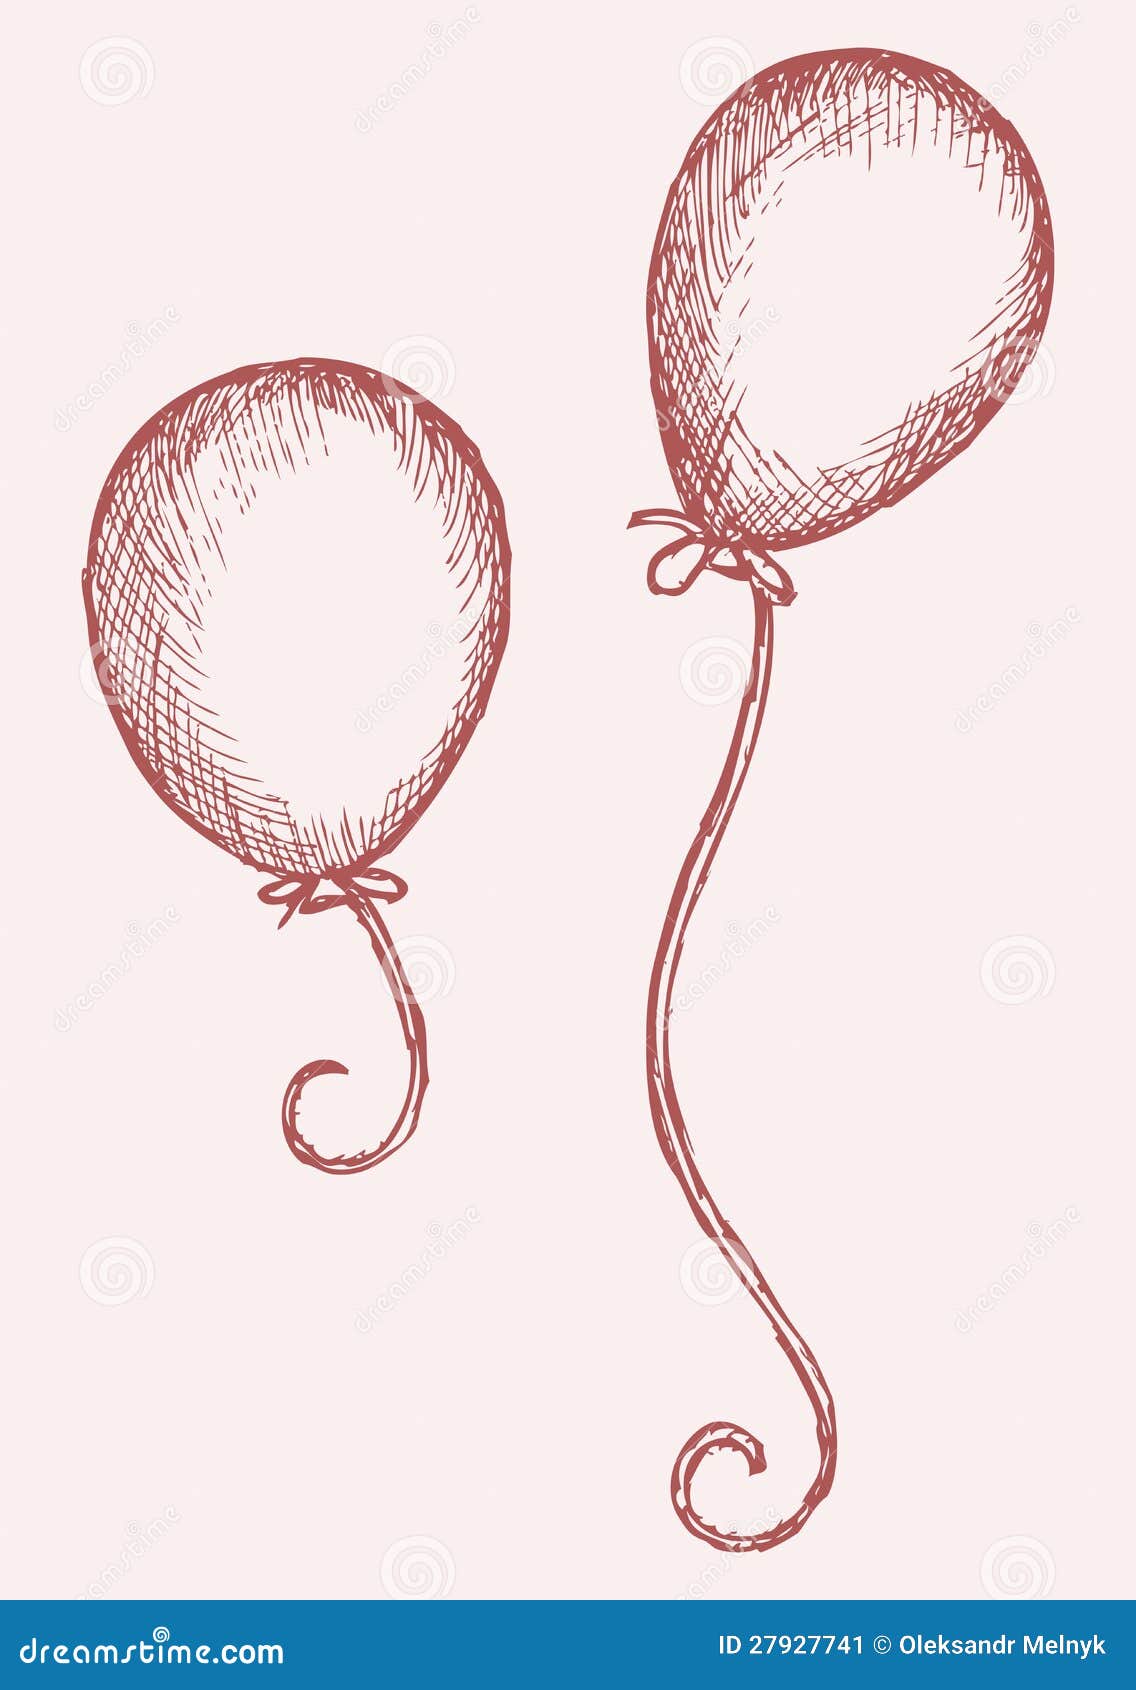 Balloon Vector Sketches